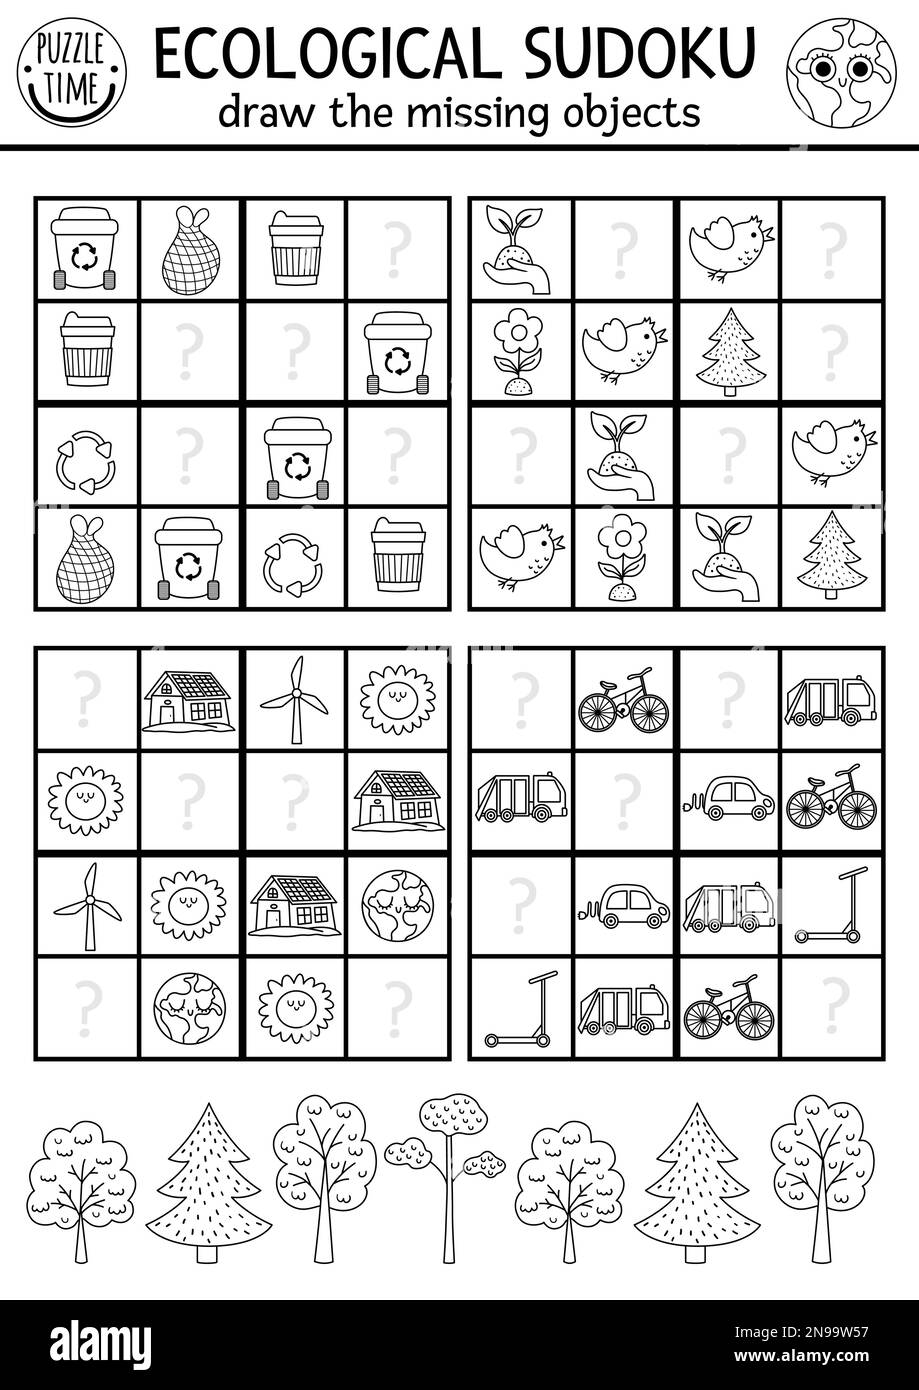 Vektor-ökologisches Sudoku-Puzzle für Kinder mit Bildern. Einfaches Schwarz-Weiß-Quiz oder Ausmalseite zum Erdentag. Schulungsbereich für Umweltbewusstsein Stock Vektor